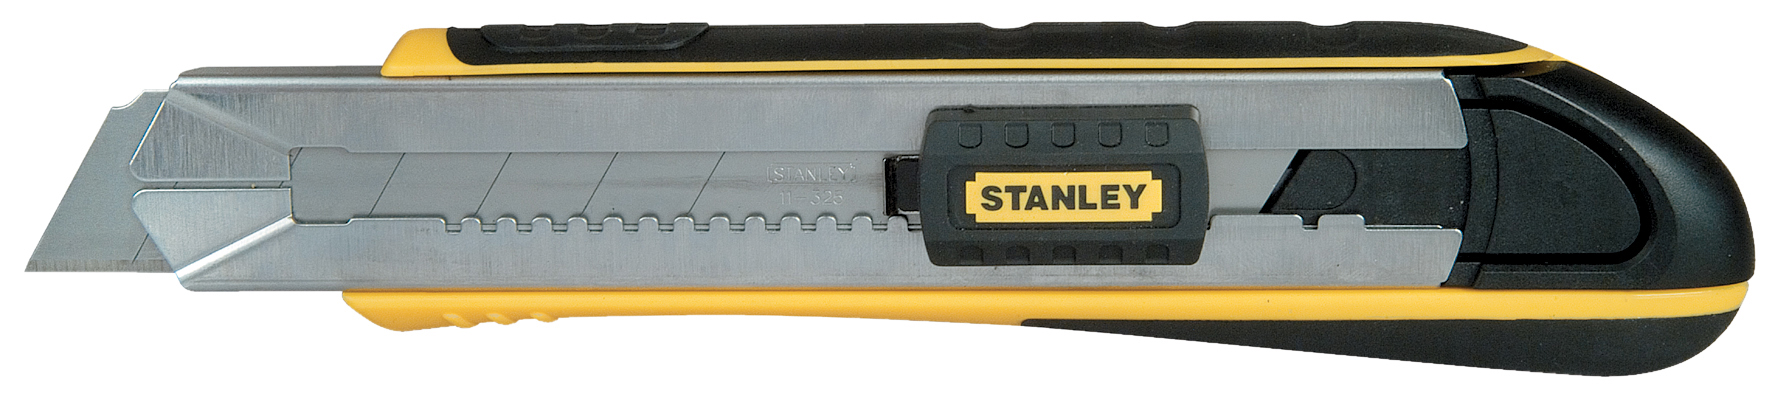 Stanley Cuttermesser Fatmax 25mm